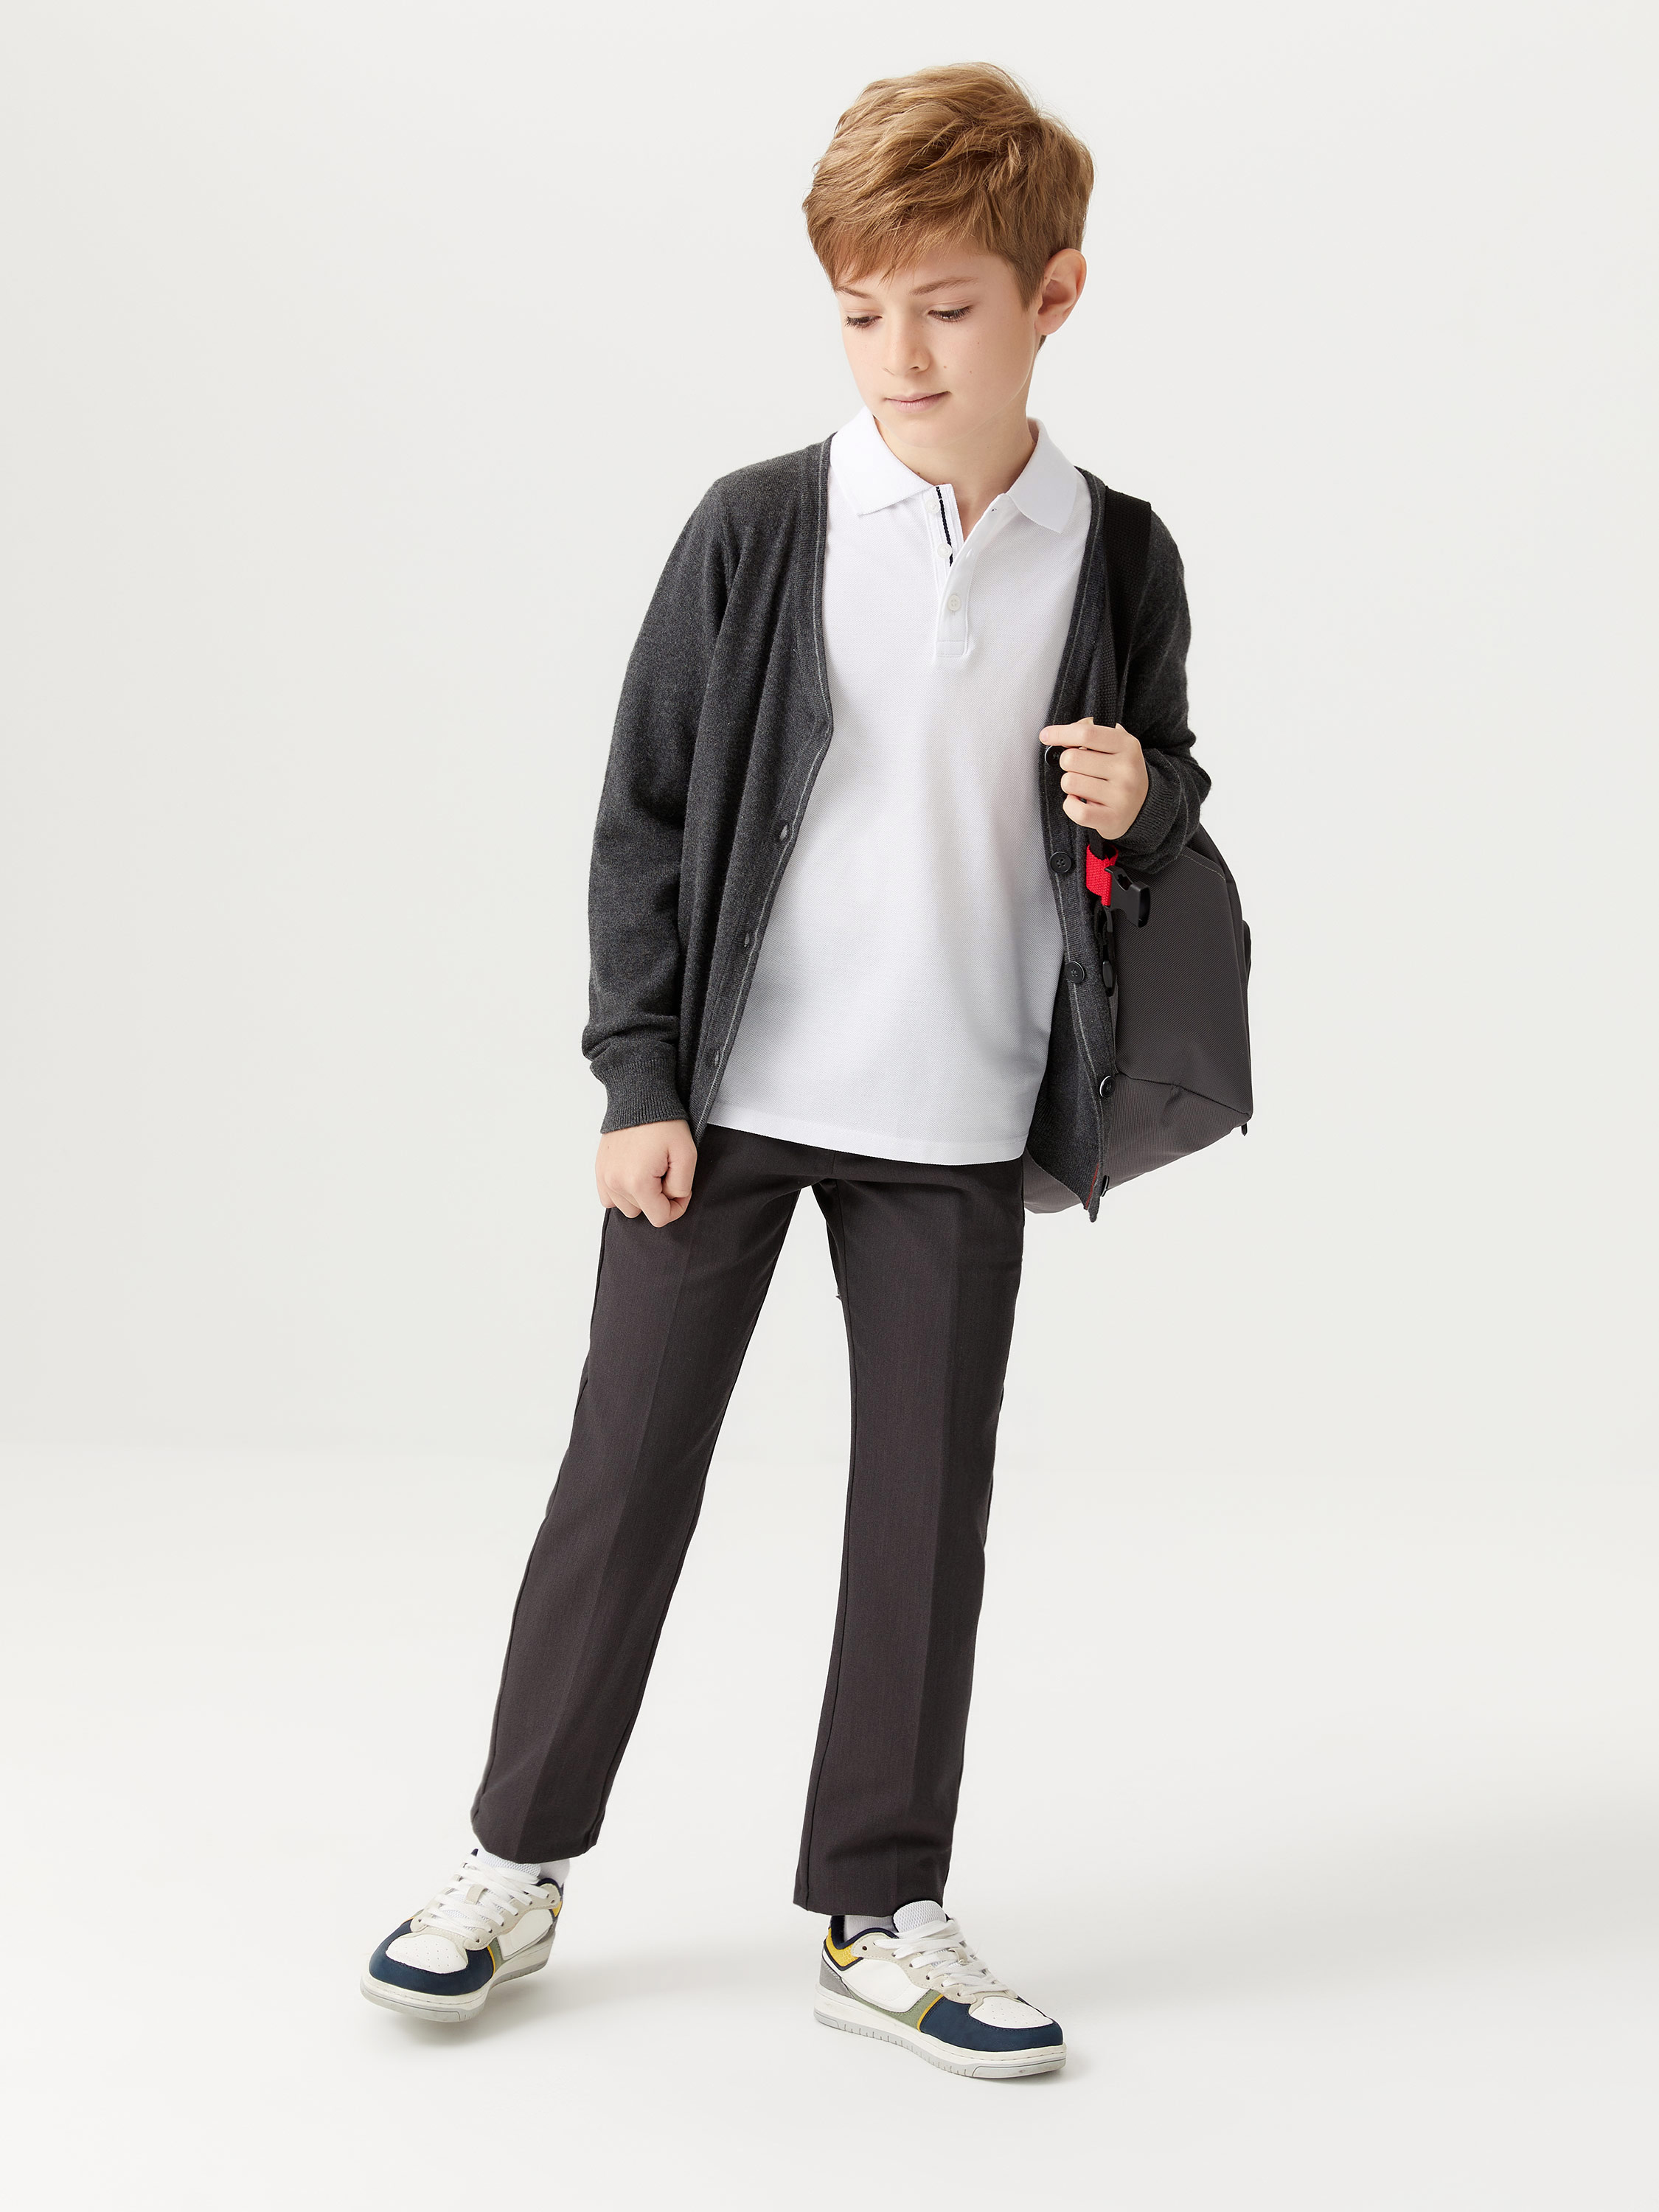 Базовые школьные брюки для мальчиков цвет: темно-серый, артикул: 1808071531– купить в интернет-магазине sela